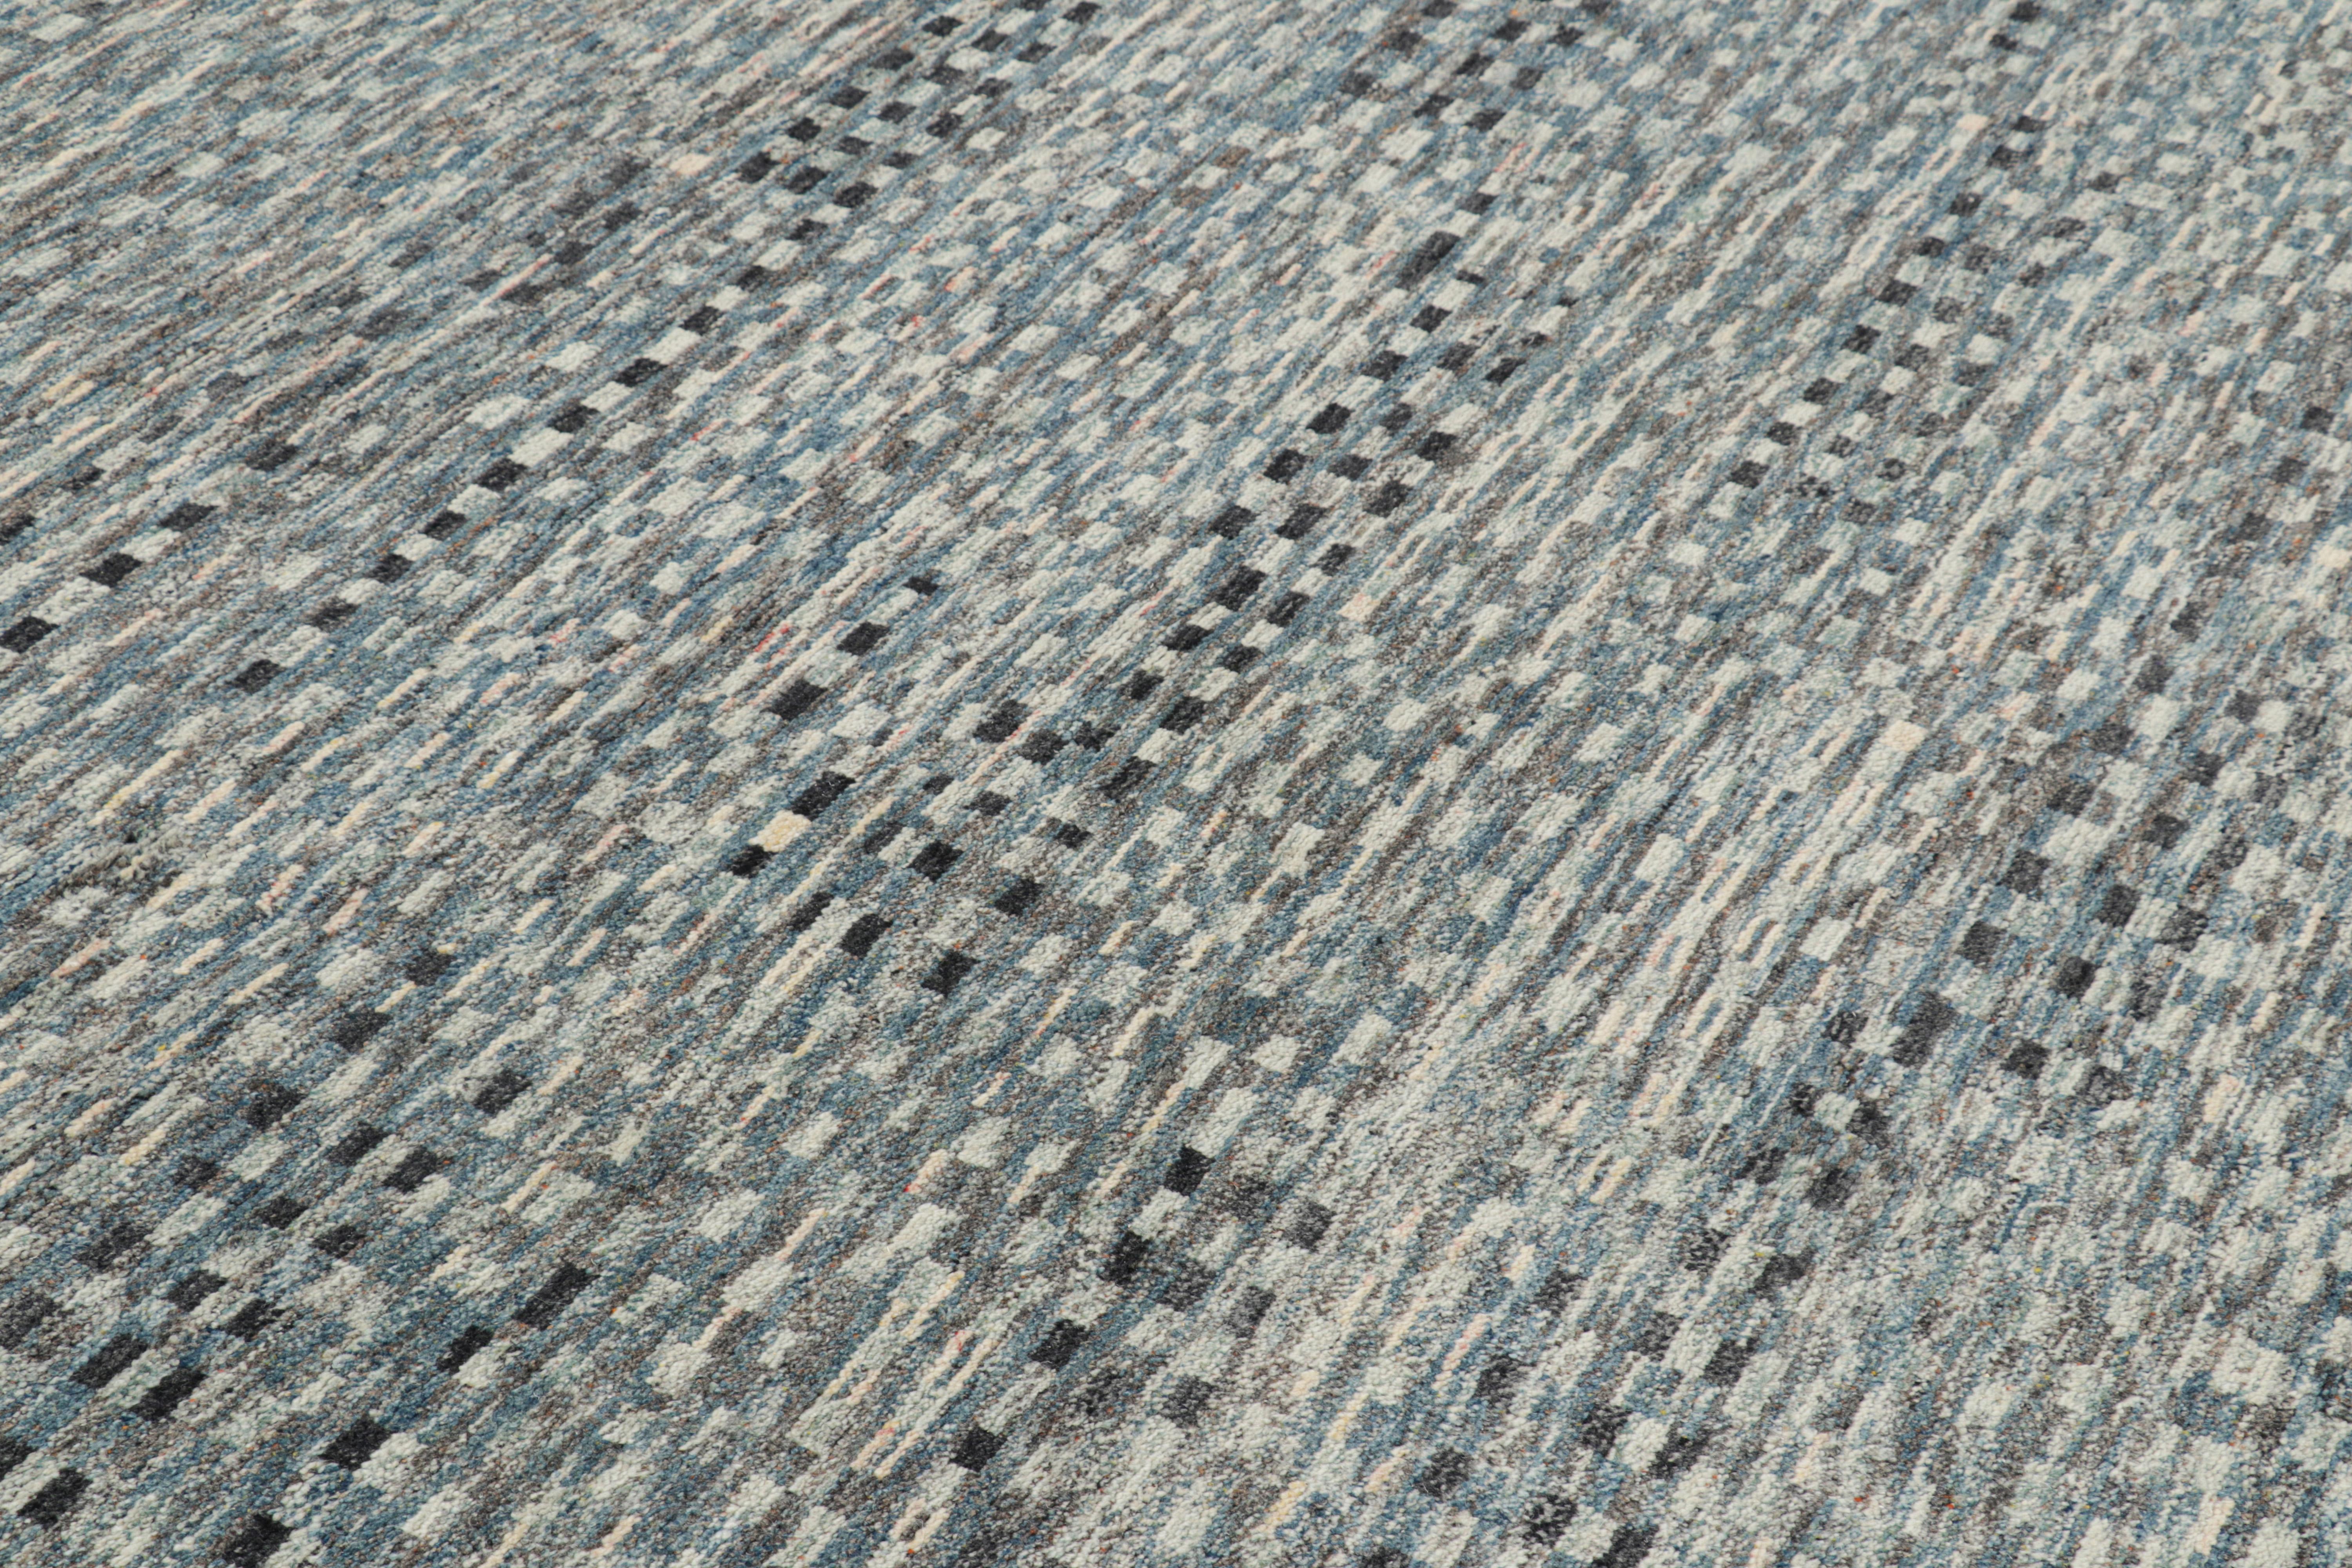 Dieser handgeknüpfte Wollteppich im Format 8x10 von Rug & Kilim zeichnet sich durch geometrische Muster mit einem modernen, fast abstrakten Erscheinungsbild aus, das sich an den primitivistischen Berberstämmen der Boucherouite orientiert. 

Über das